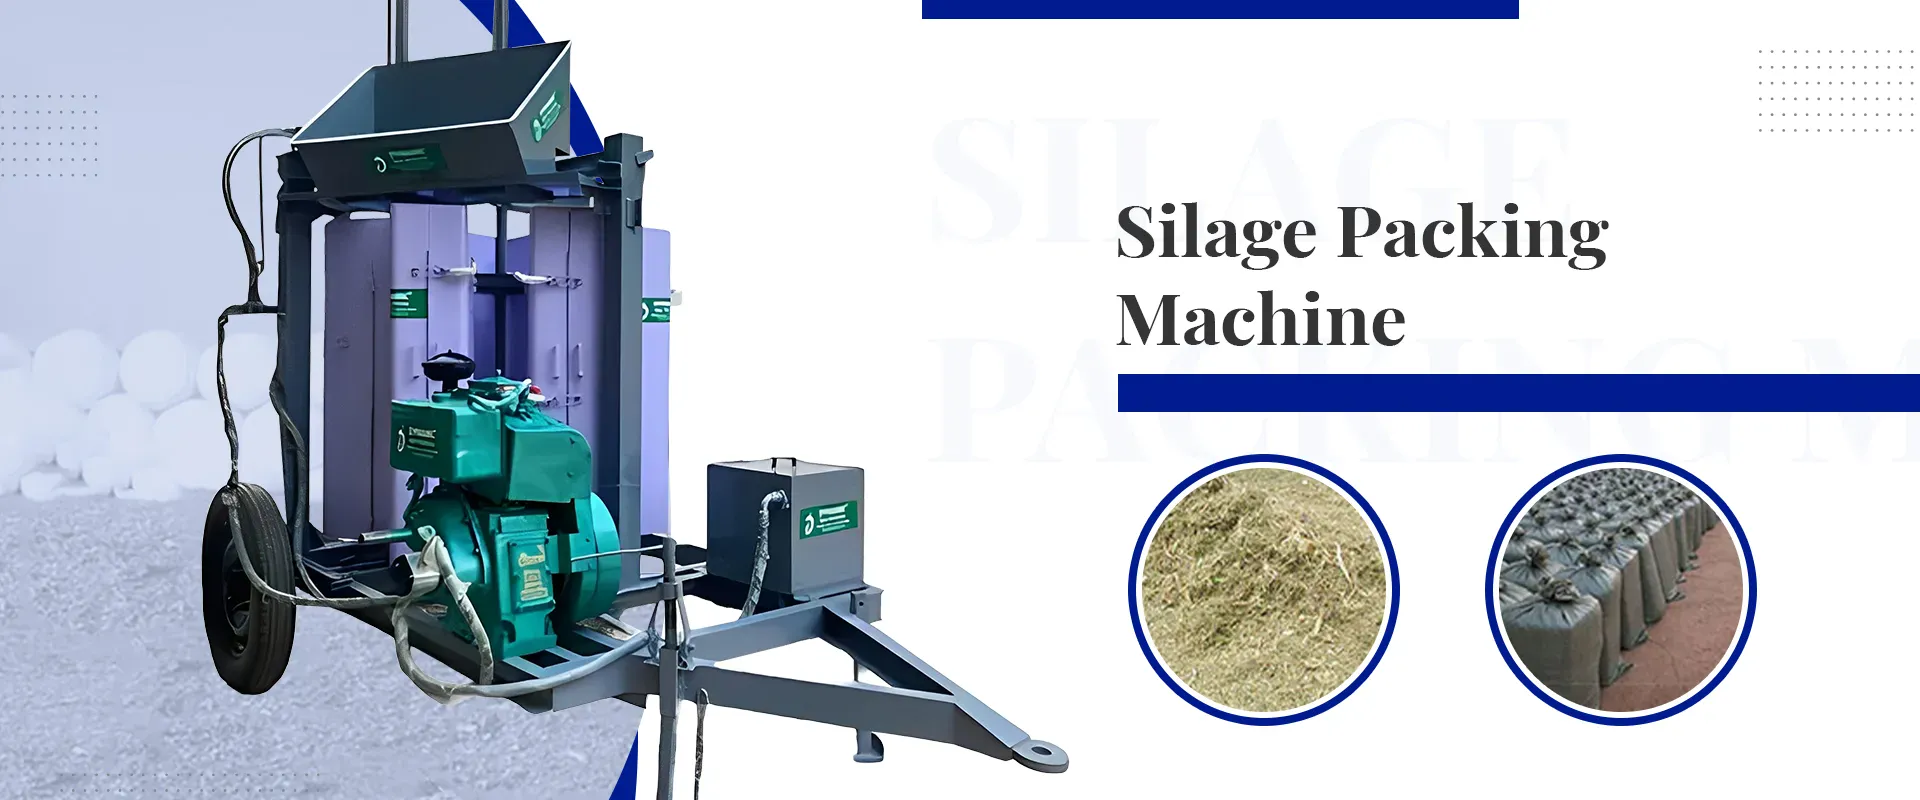 Silage Packing Machine In Mangan